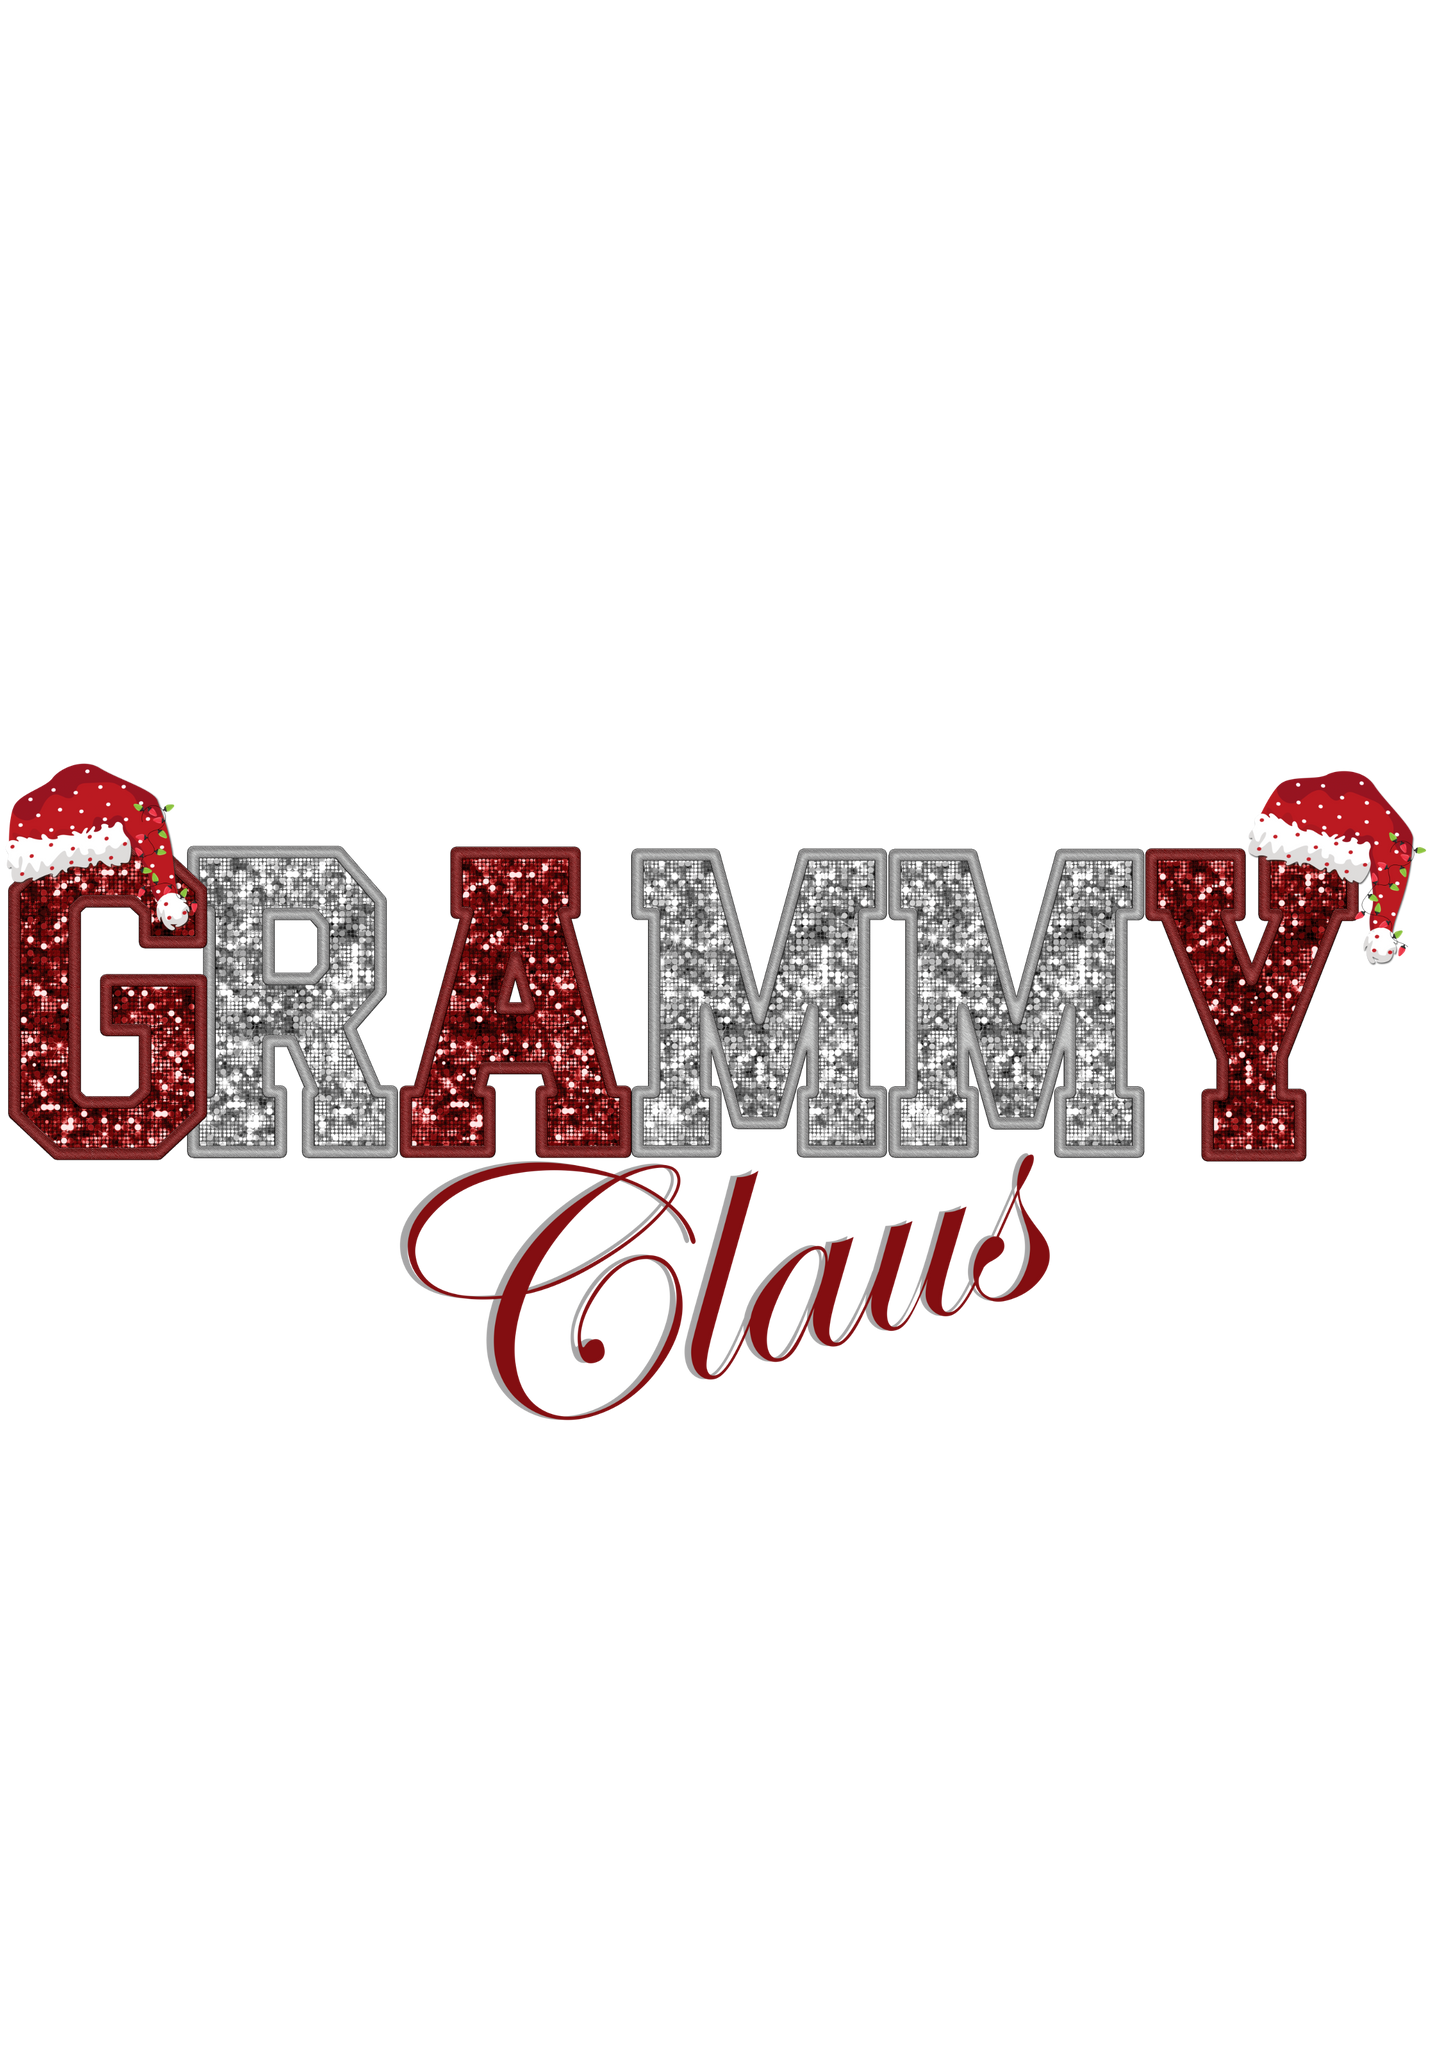 Grammy Claus